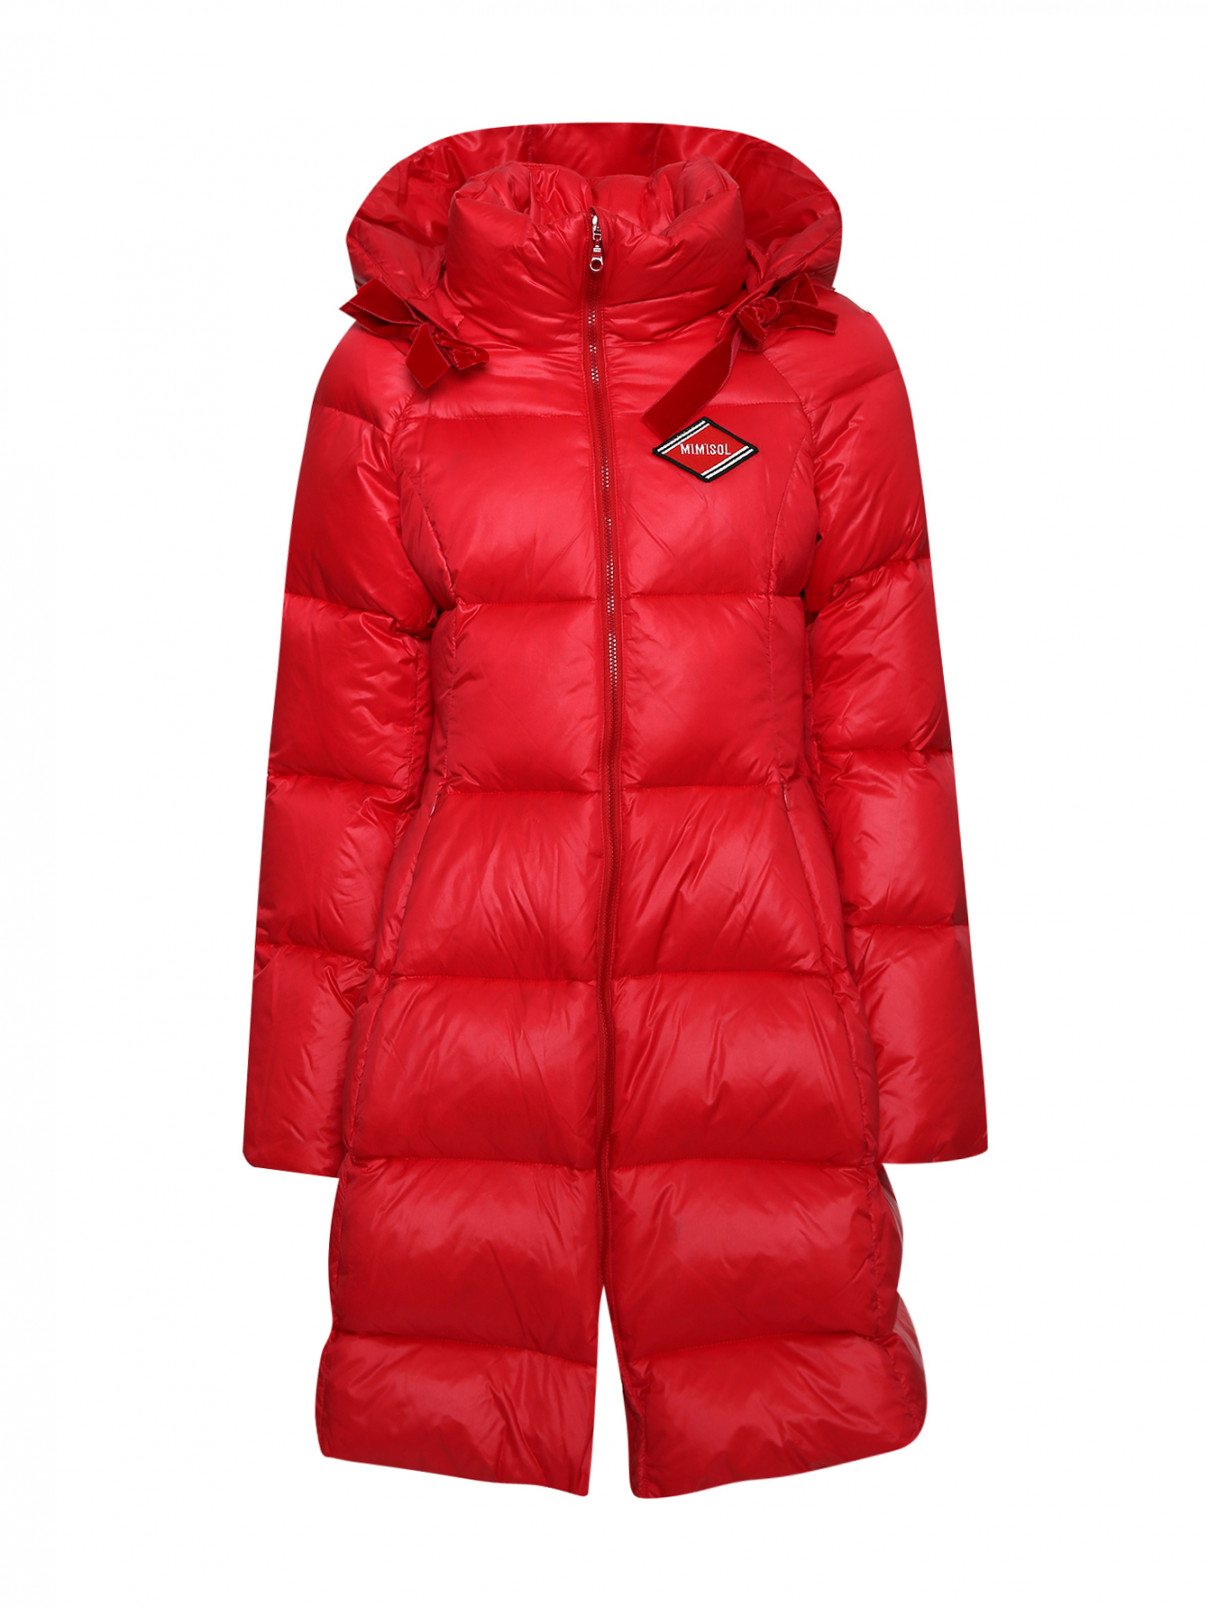 Пальто пуховое с капюшоном MiMiSol  –  Общий вид  – Цвет:  Красный